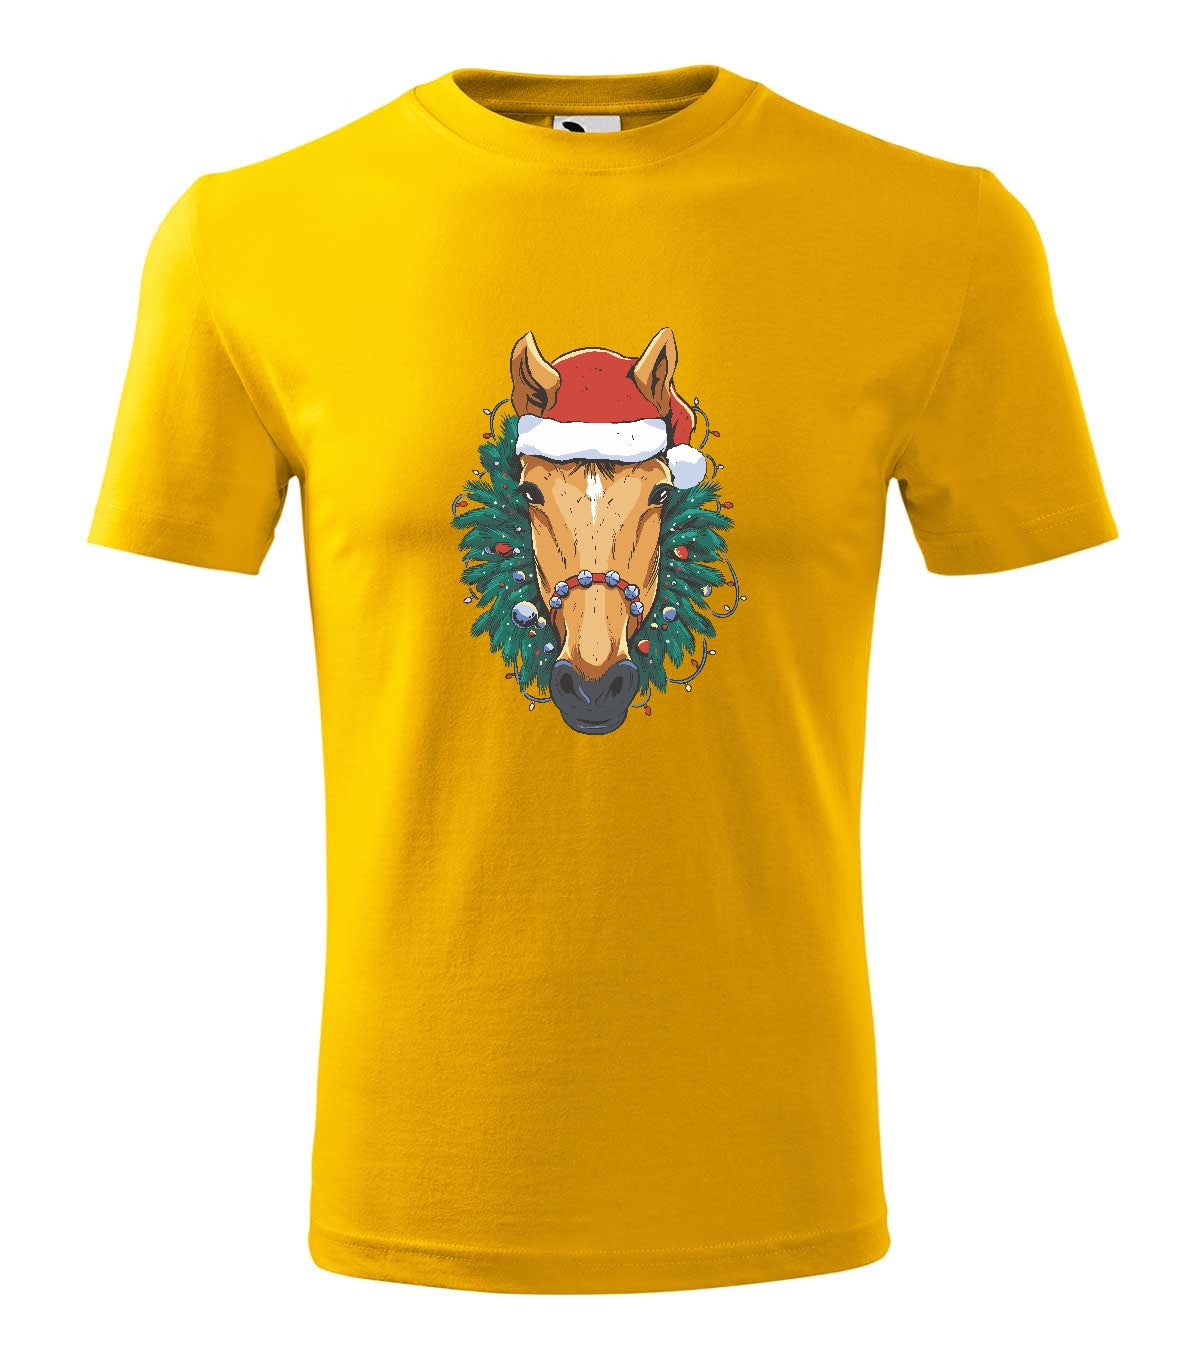 Christmas Horse gyerek technikai póló